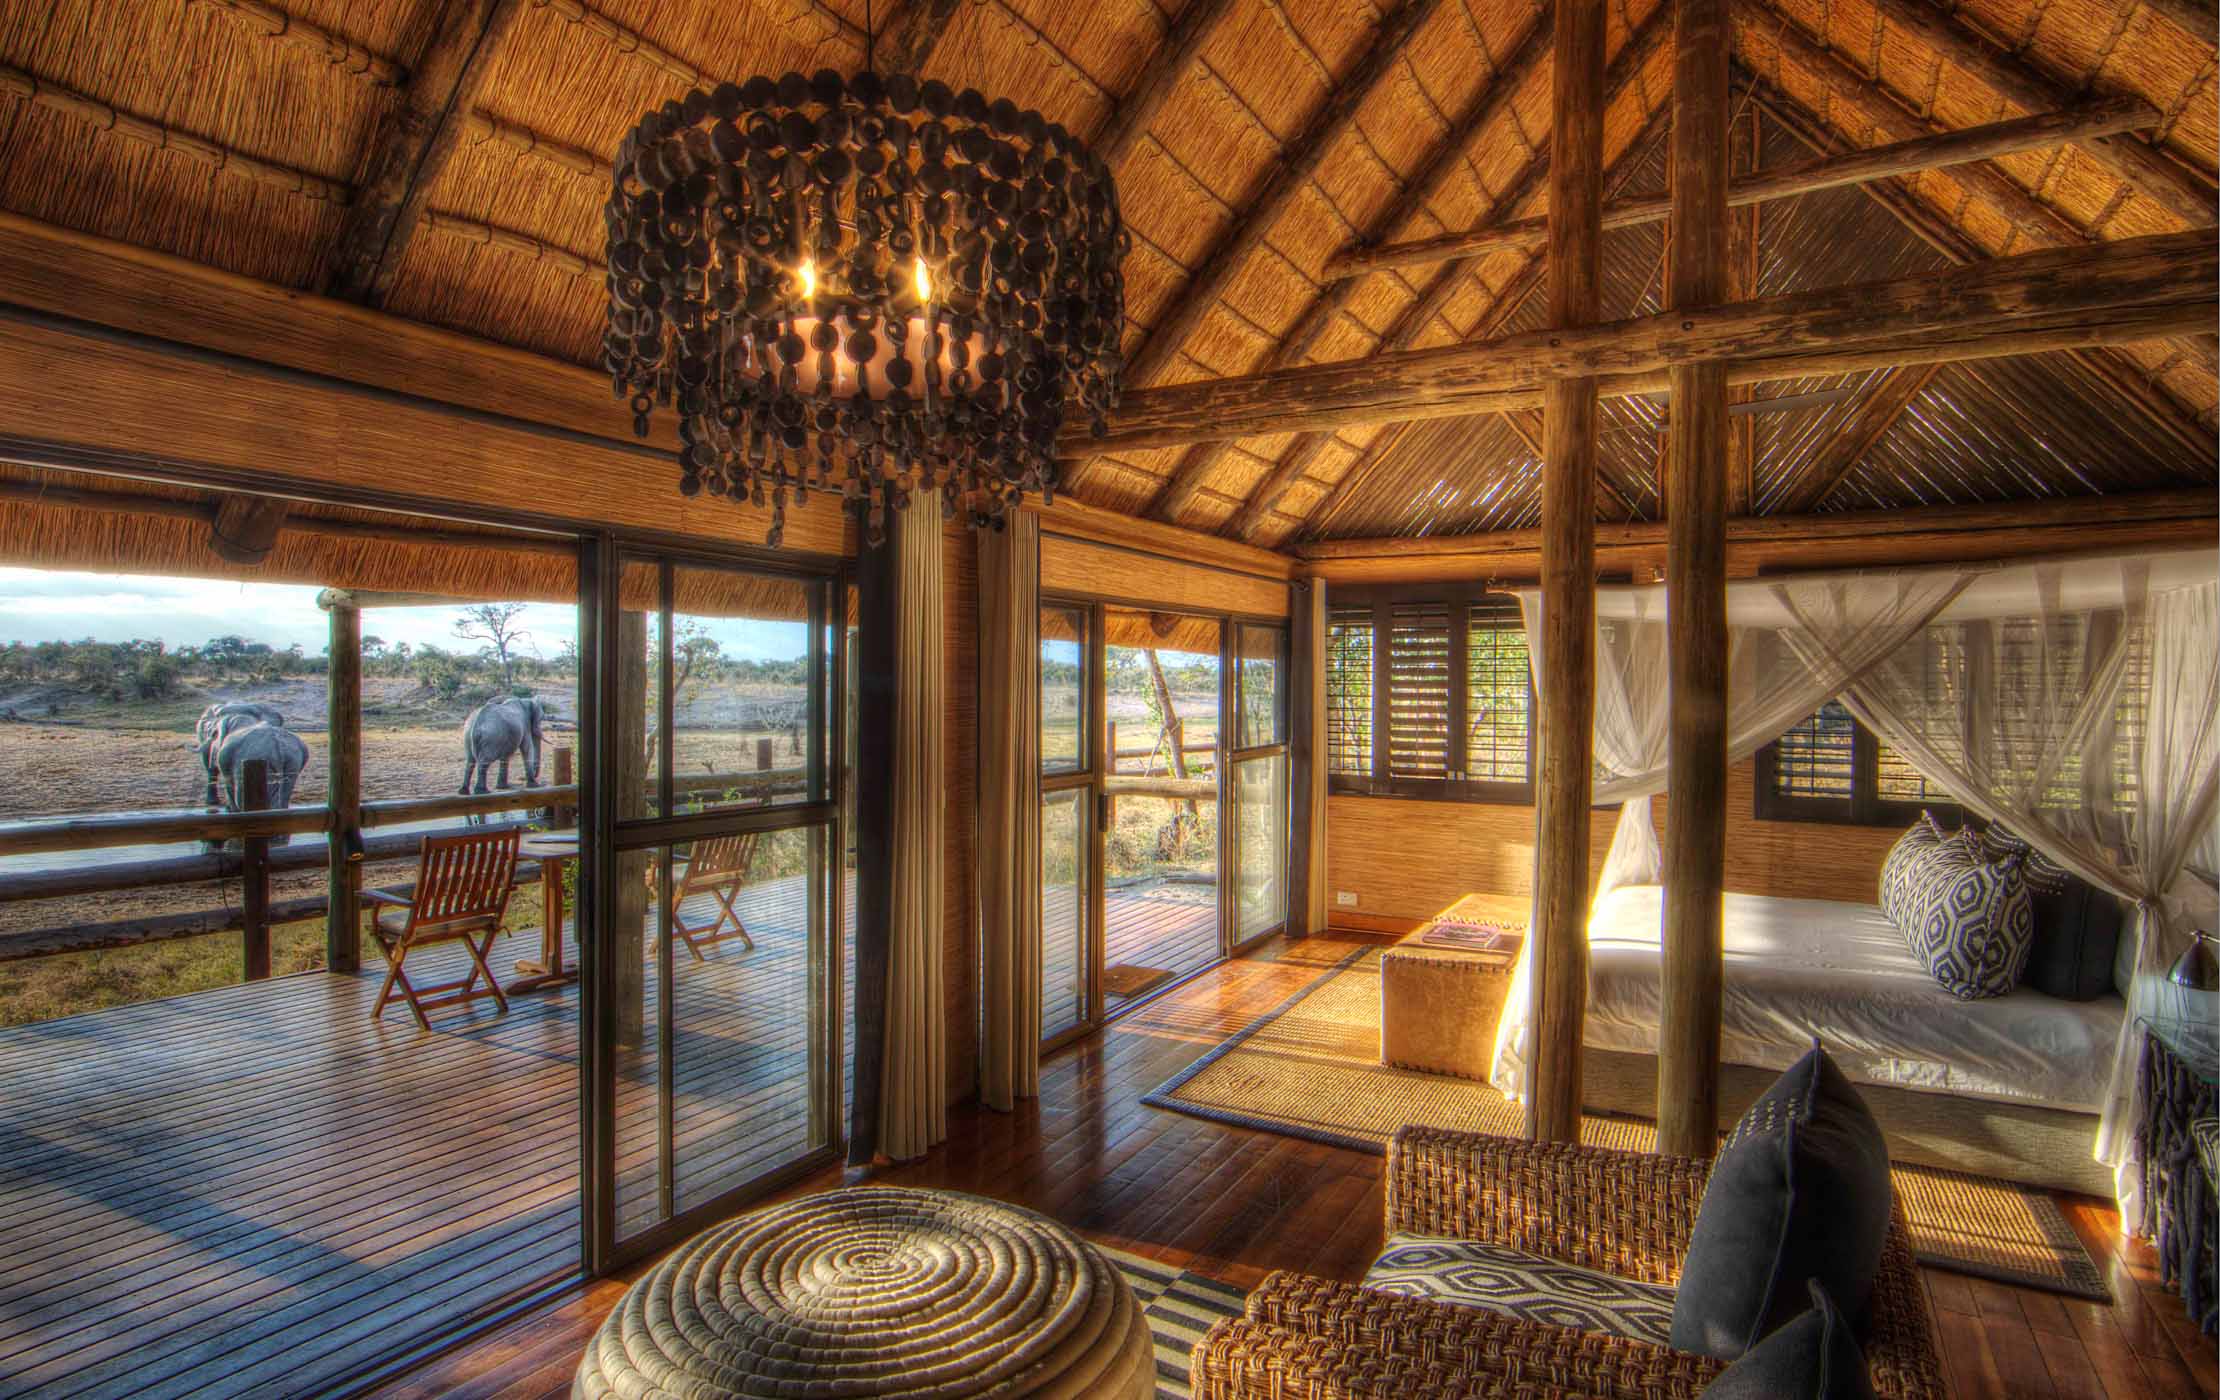 Savute Safari Lodge